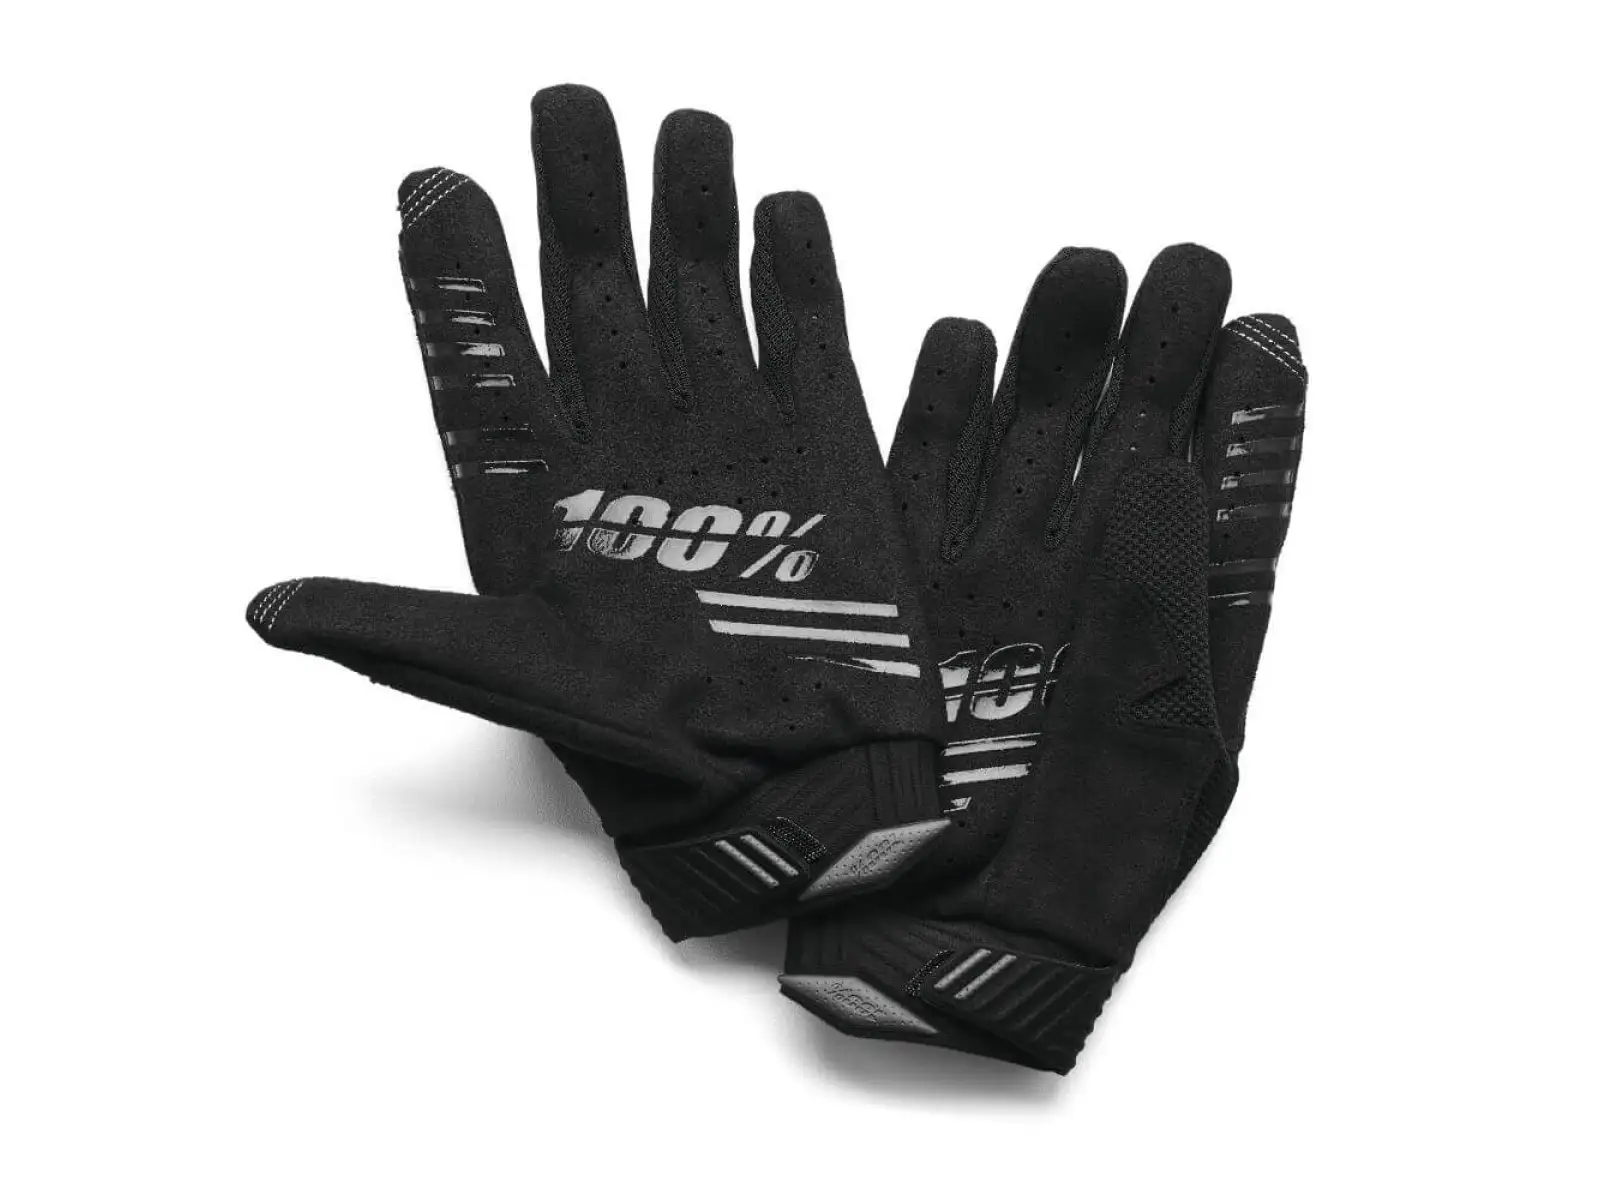 100% R-Core pánské rukavice dlouhé Black